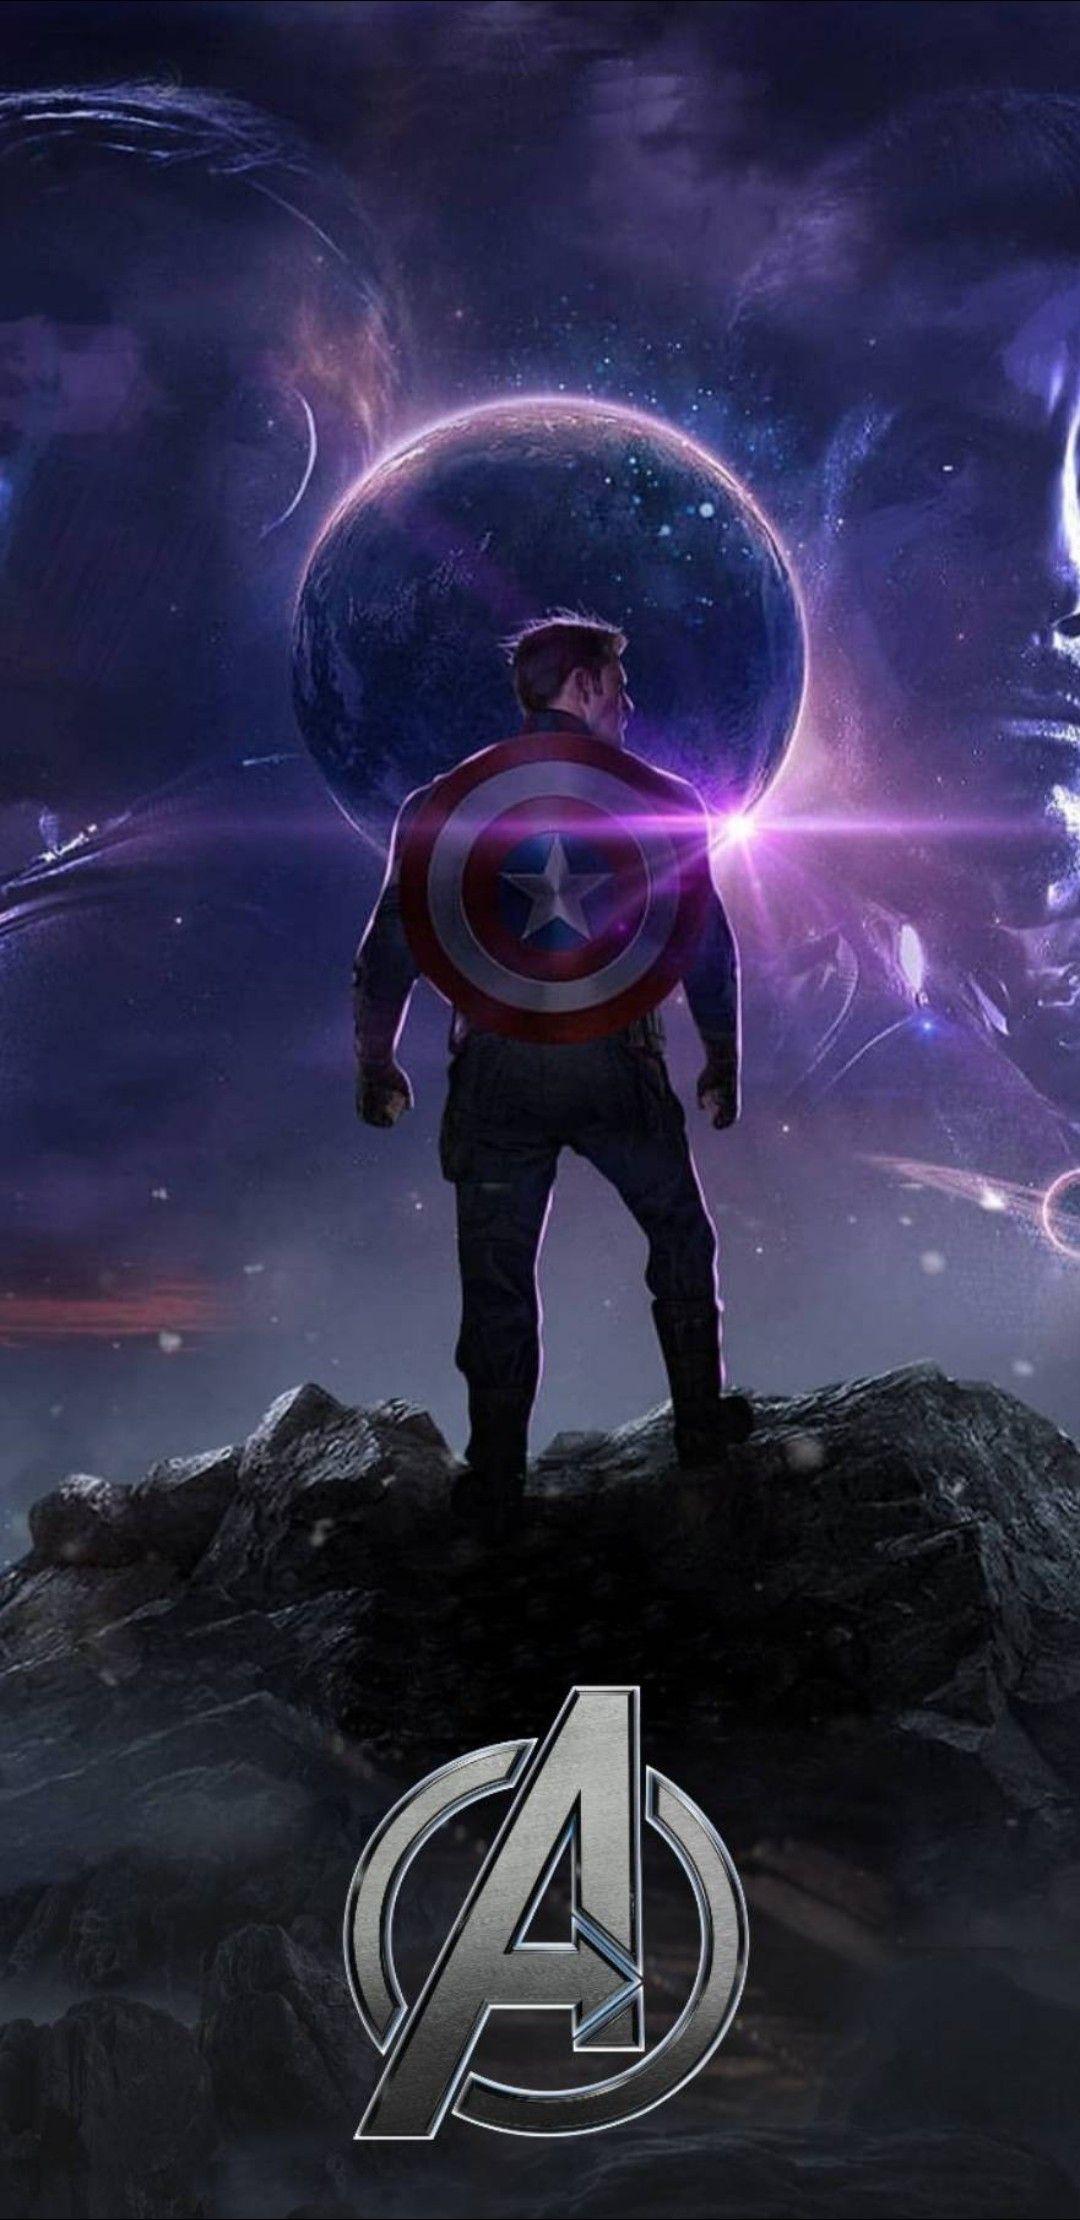 Avengers Captain America Endgame wallpaper. Marvel™. Marvel heroes